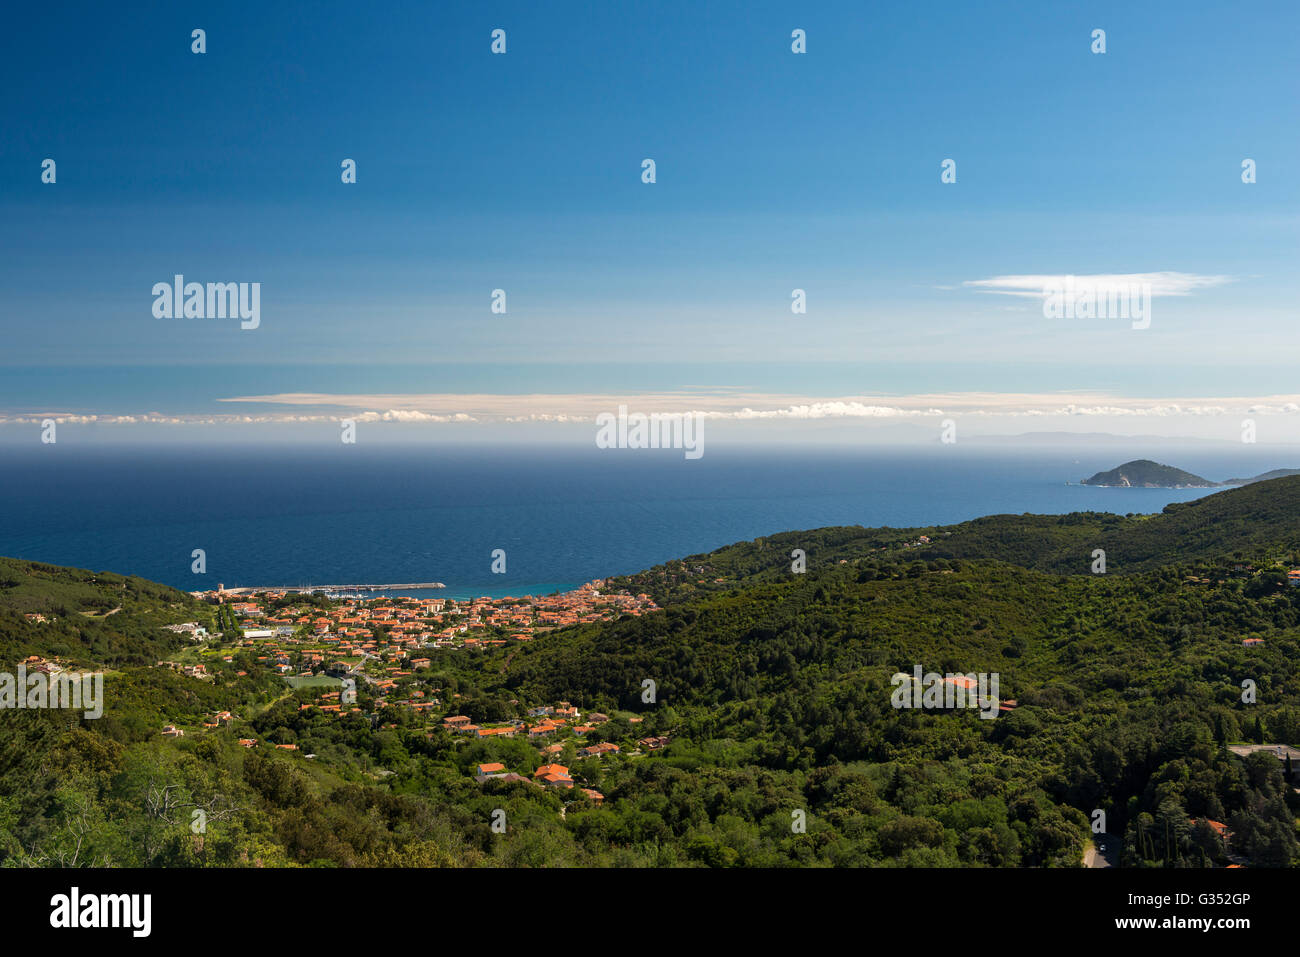 View of Marciana Marina, Island of Elba, Livorno, Tuscany, Italy Stock Photo